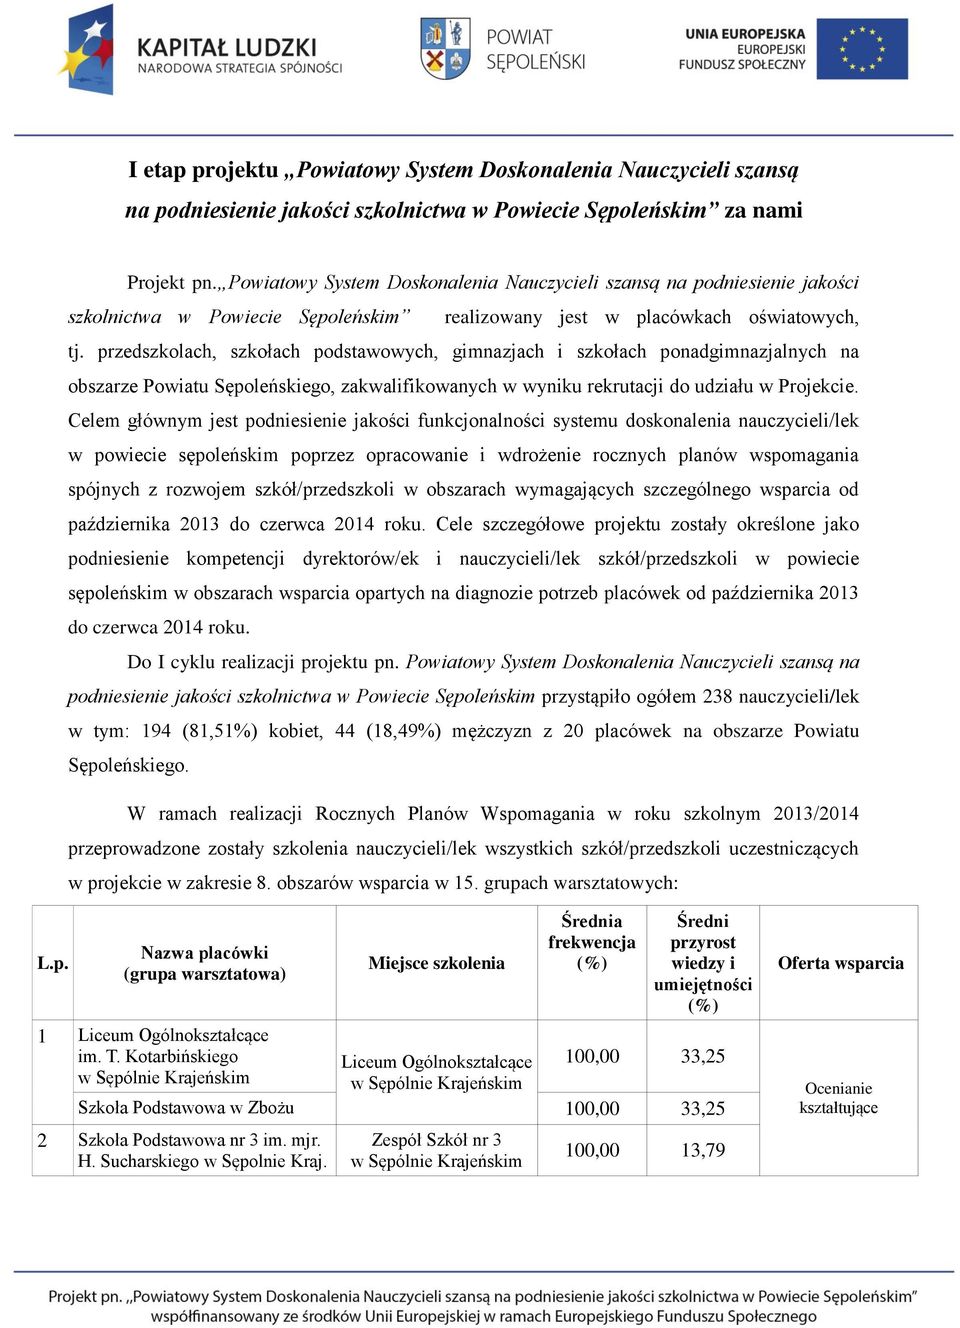 przedszkolach, szkołach podstawowych, gimnazjach i szkołach ponadgimnazjalnych na obszarze Powiatu Sępoleńskiego, zakwalifikowanych w wyniku rekrutacji do udziału w Projekcie.